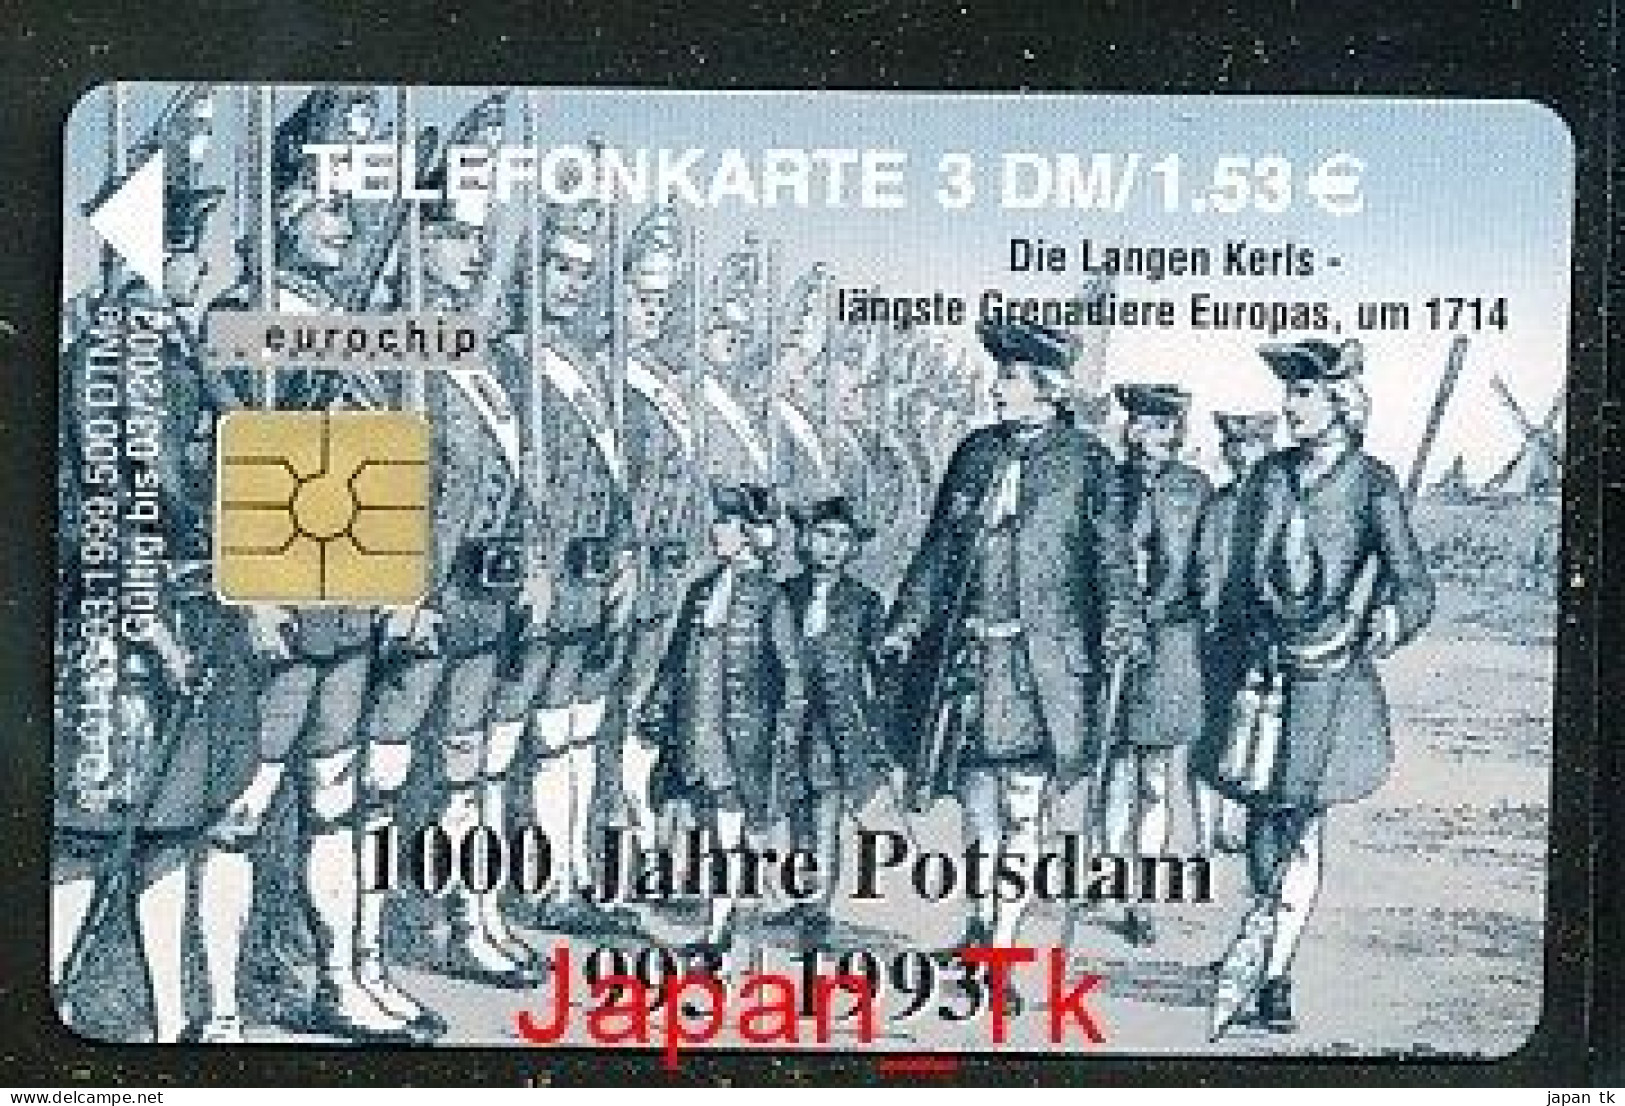 GERMANY O 113 99 1000 Jahre Potsdam   - Aufl  500 - Siehe Scan - O-Series : Series Clientes Excluidos Servicio De Colección